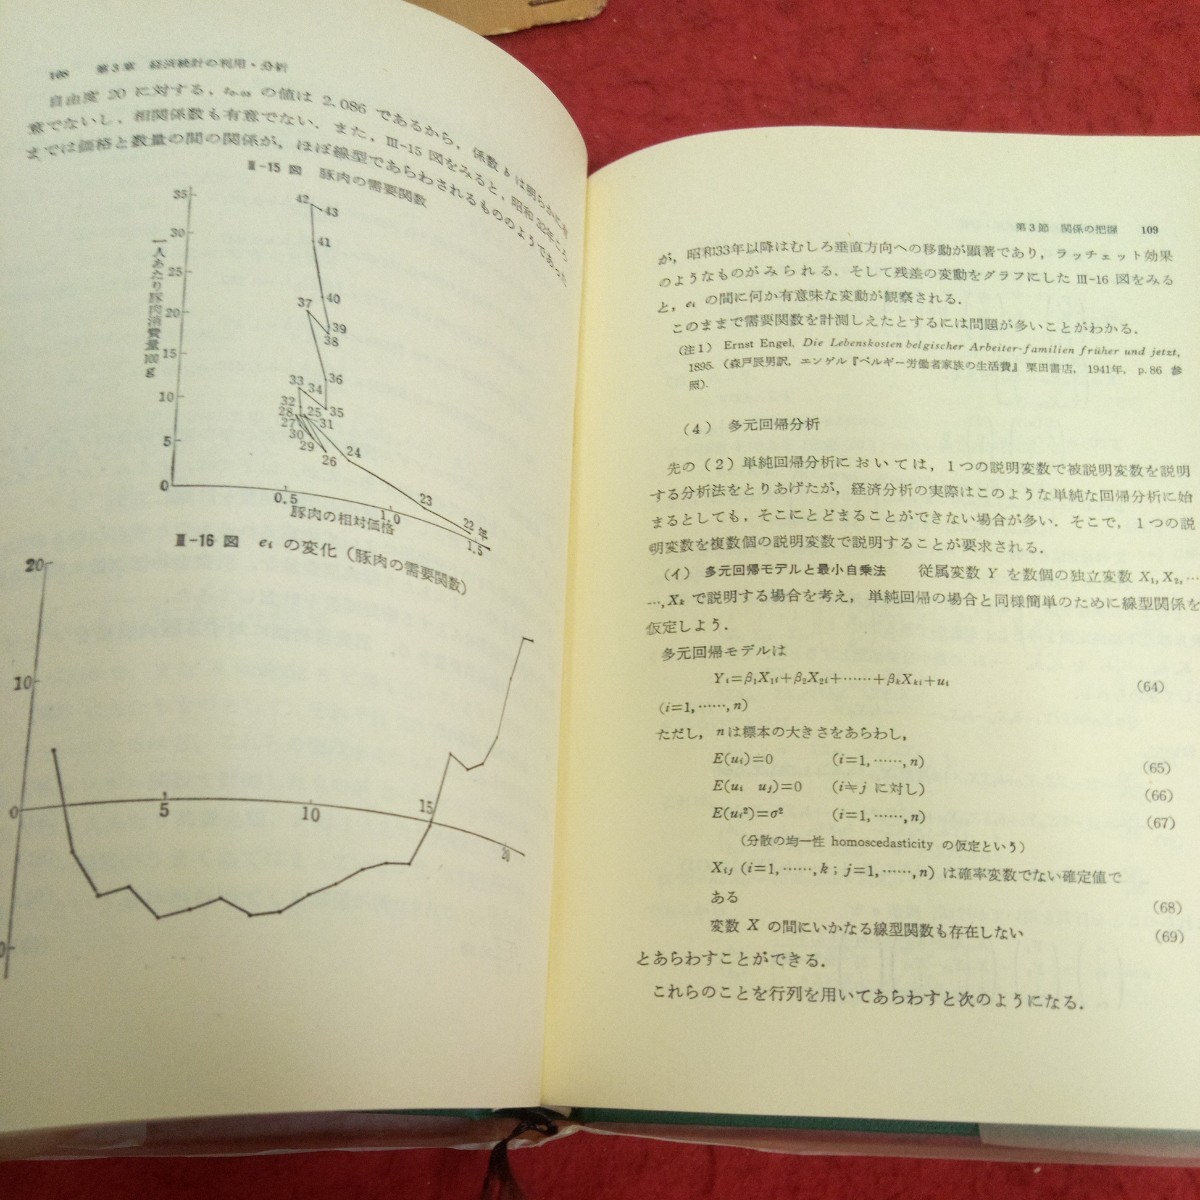 f-662 経済統計講義 伊大知良太郎 編 青林講義シリーズ 箱入り 青林書院新社 1971年発行 経済と統計の間 経済統計データ など※2_画像5